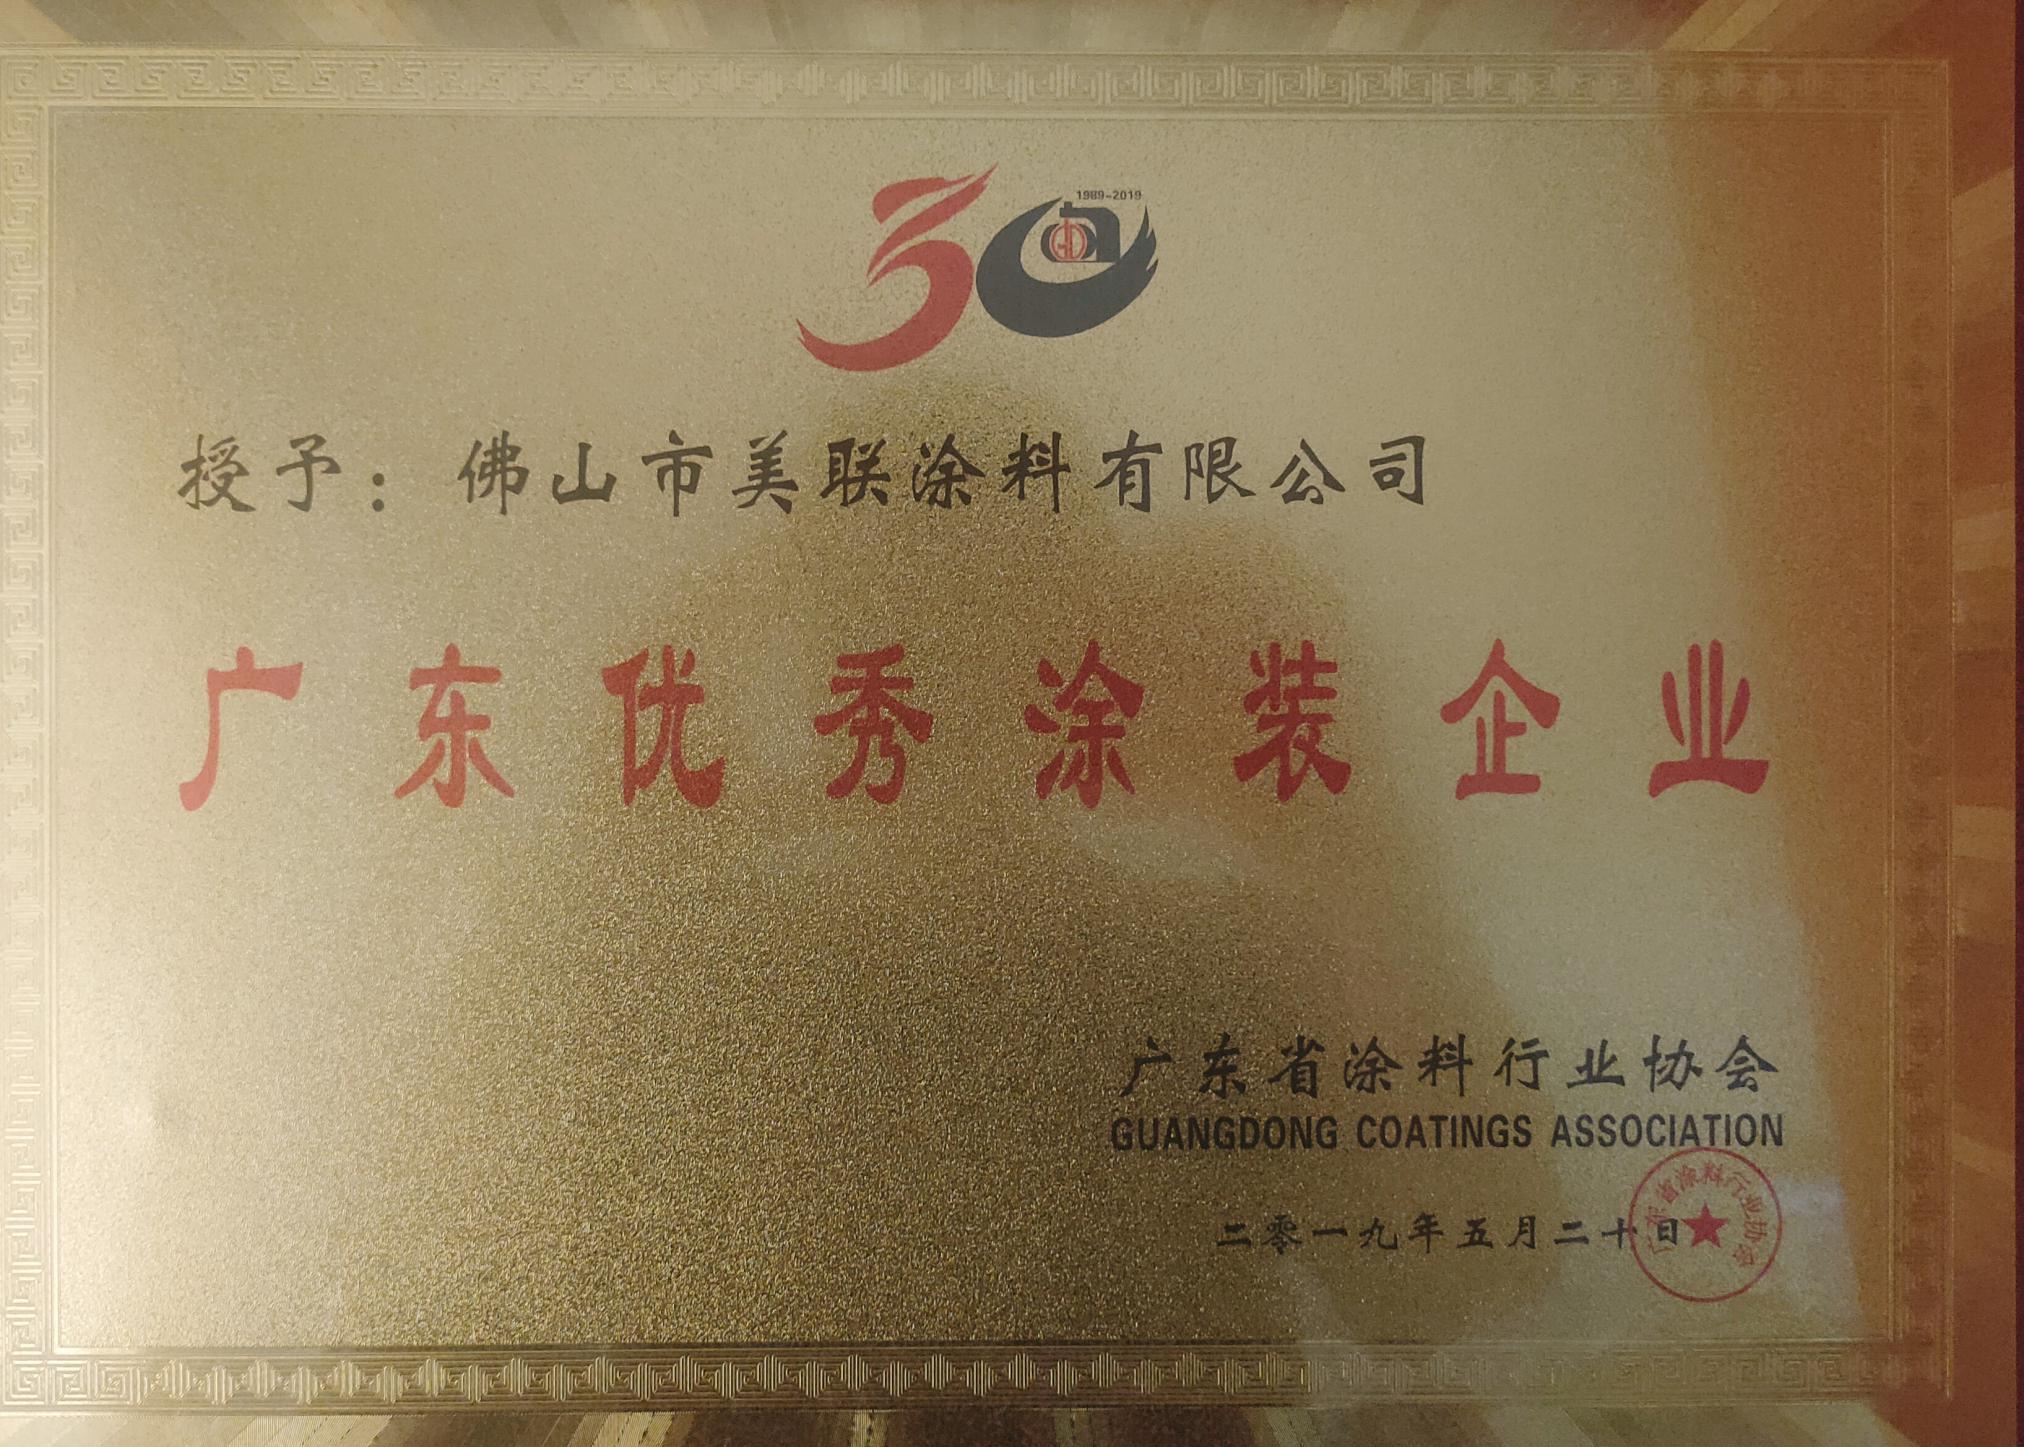 廣東優秀涂裝企業證書-美聯榮譽